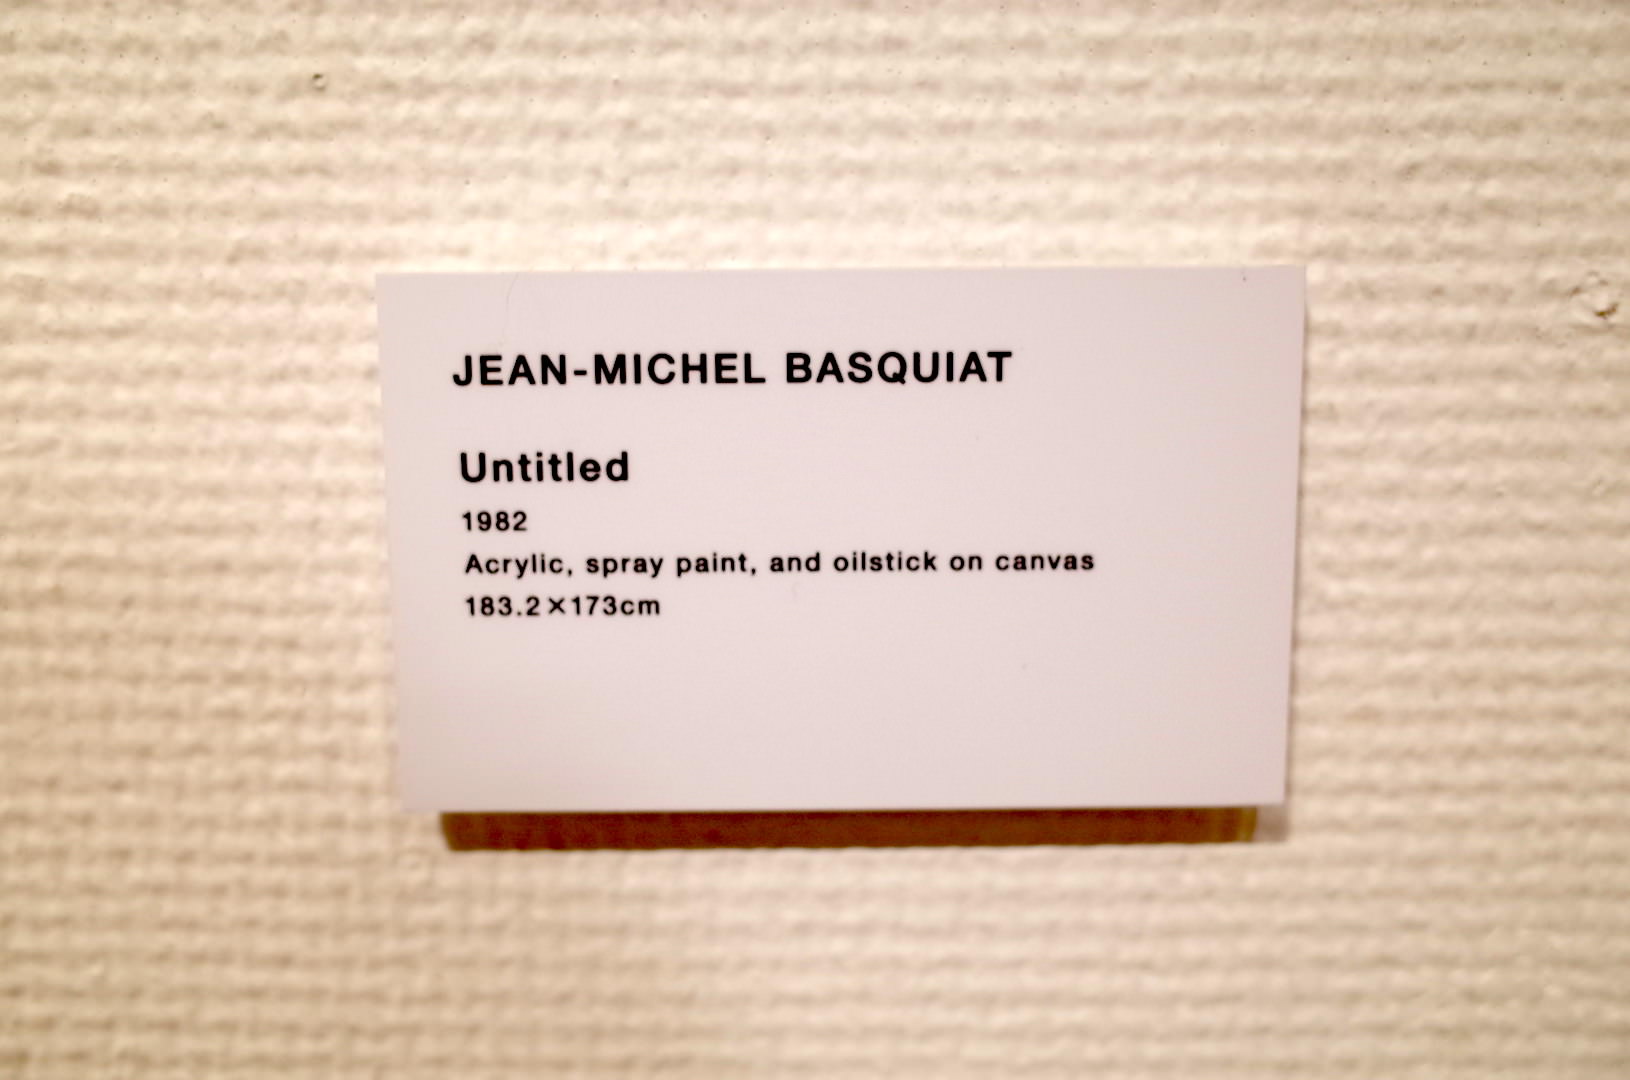 バスキア作品のクレジット「Untitled」1982年製作